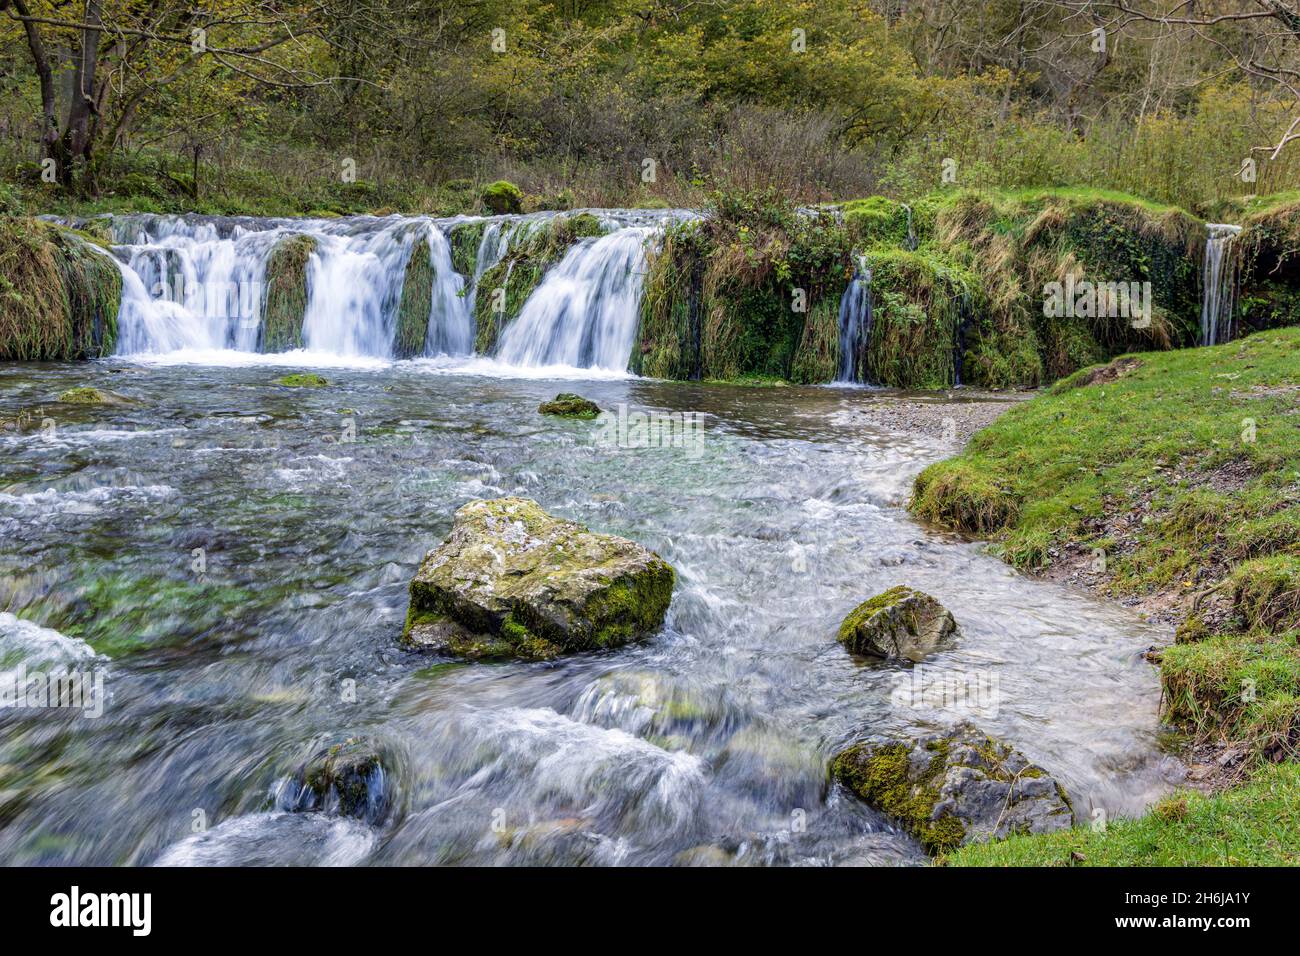 Tufa Dam o weir è una cascata pittoresca su rocce calcaree, fiume Lathkill, Lathkill Dale, Peak District National Park, Derbyshire, Inghilterra. Foto Stock